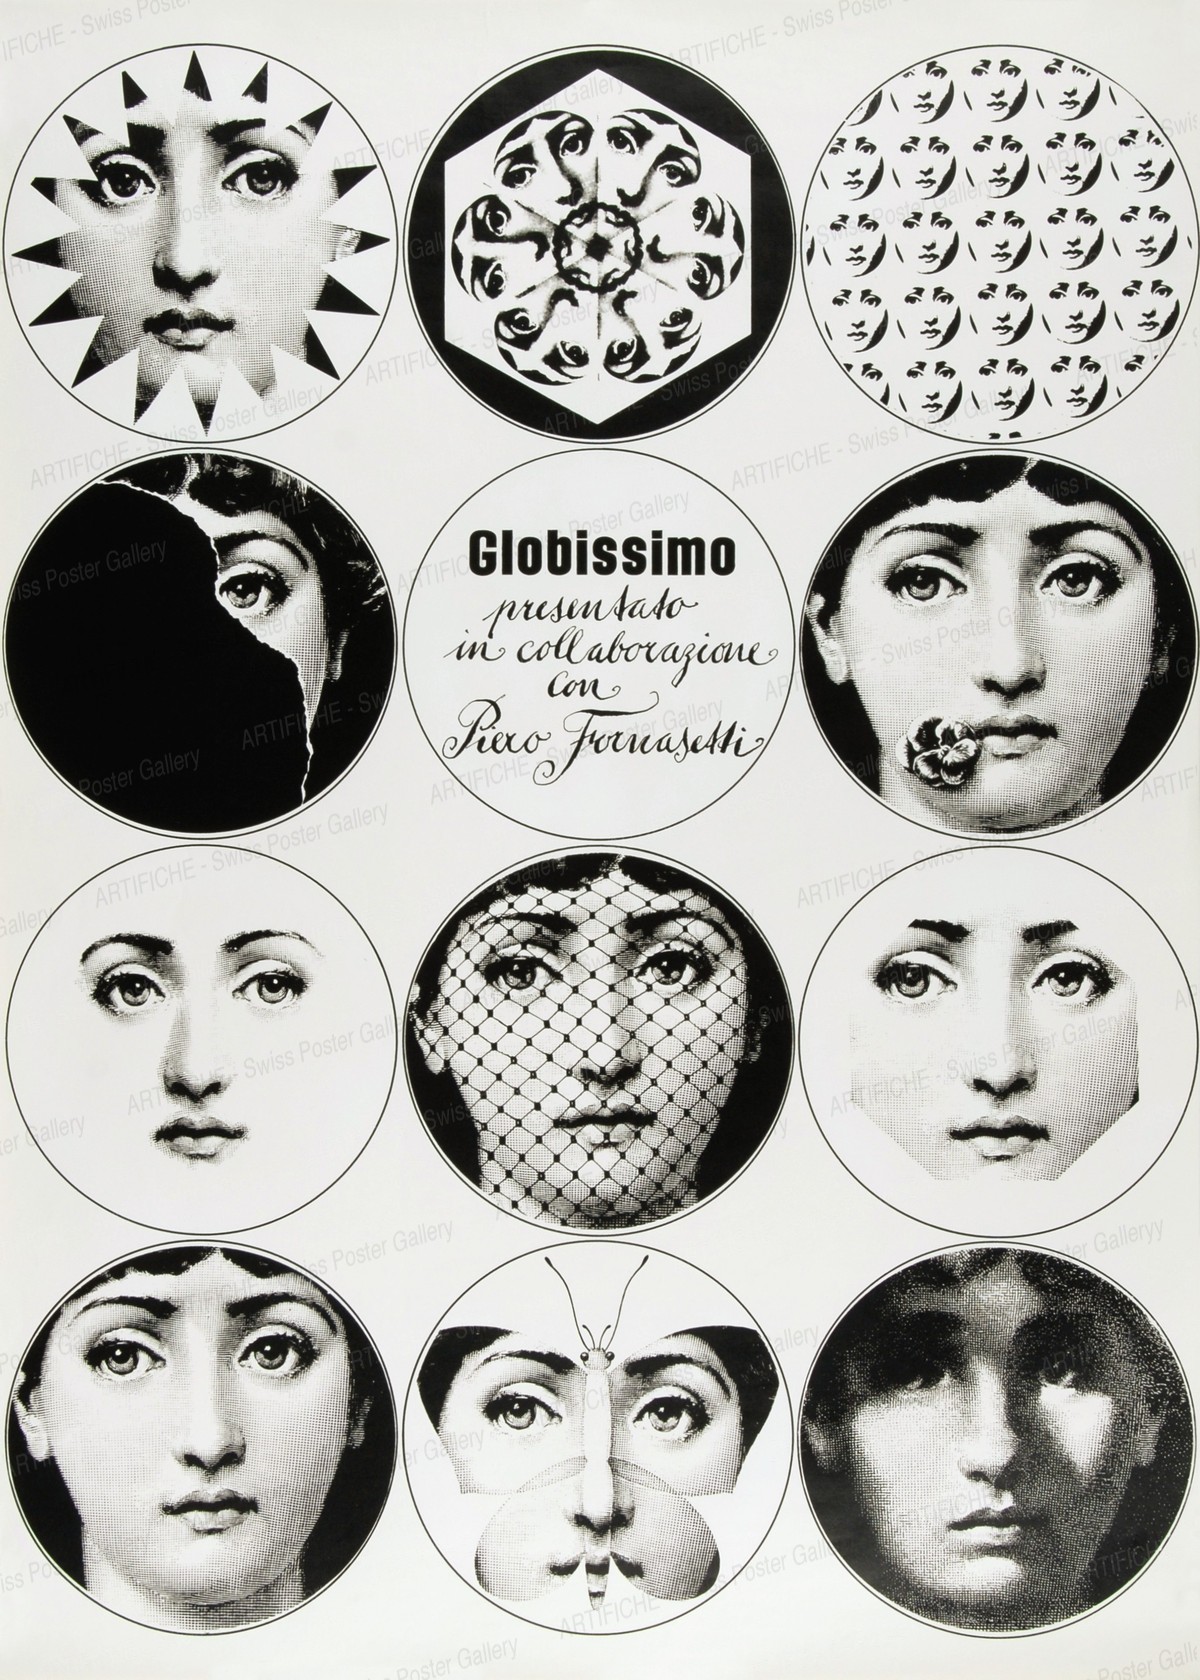 Globissimo – presentato in collaborazione con Piero Fornasetti, Piero Fornasetti